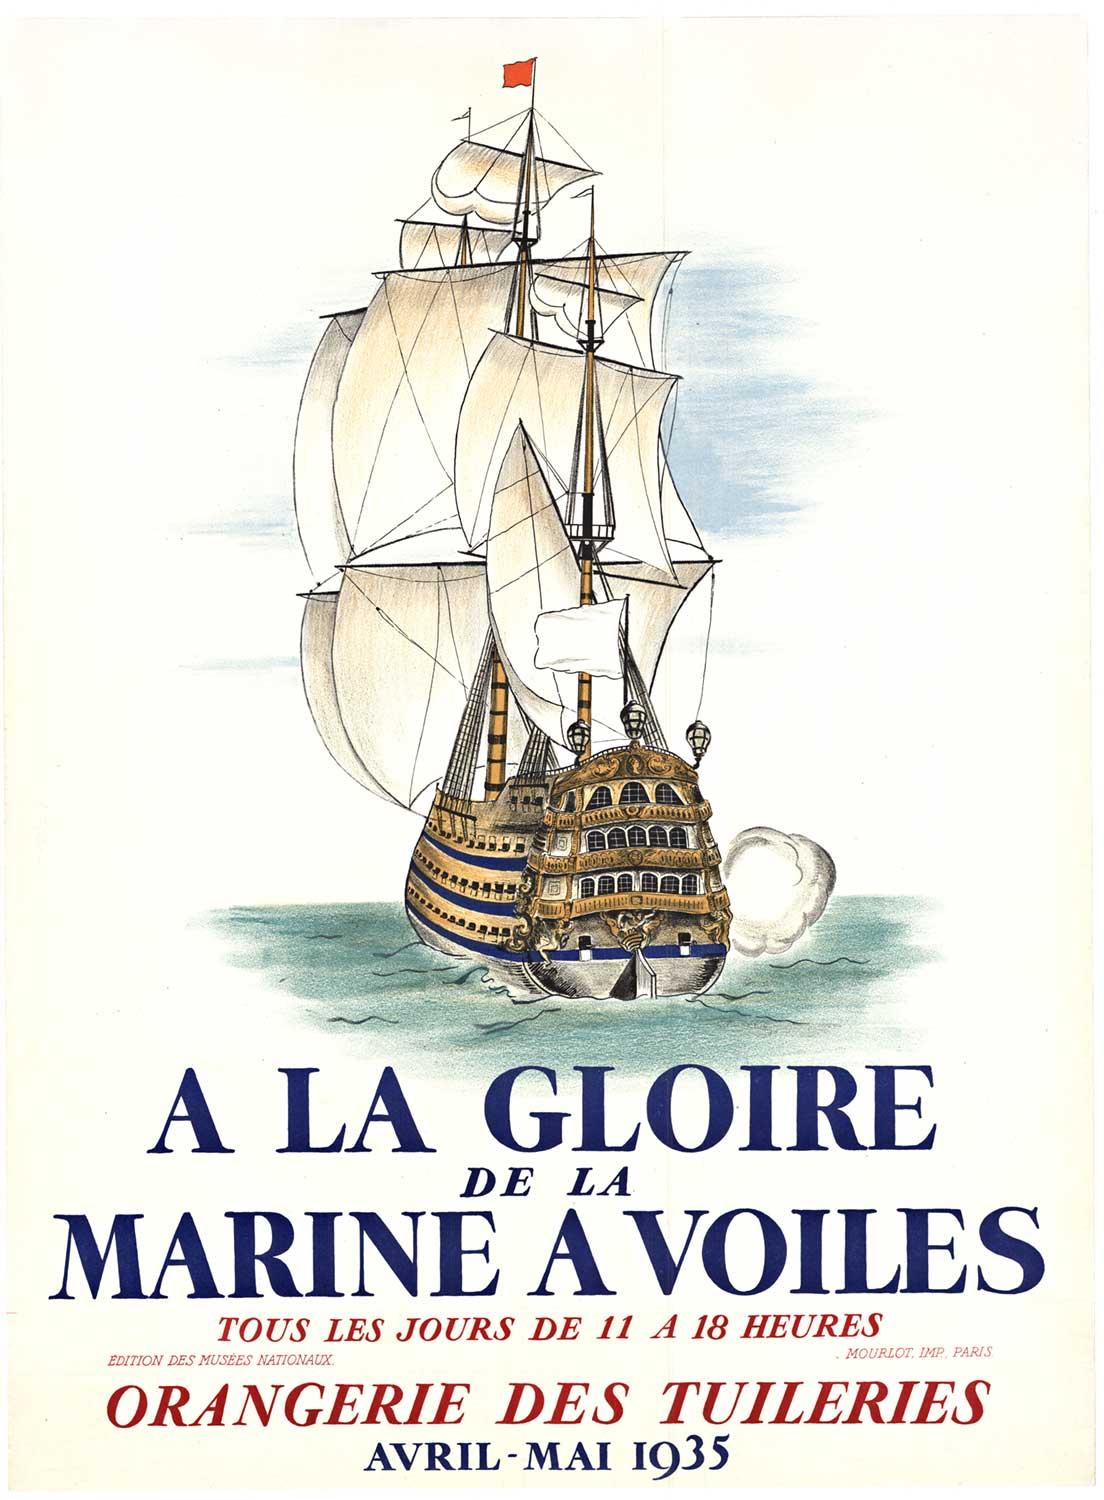 Unknown Print - Original 1935  "A La Gloire de la Marine A Voiles" vintage French poster.